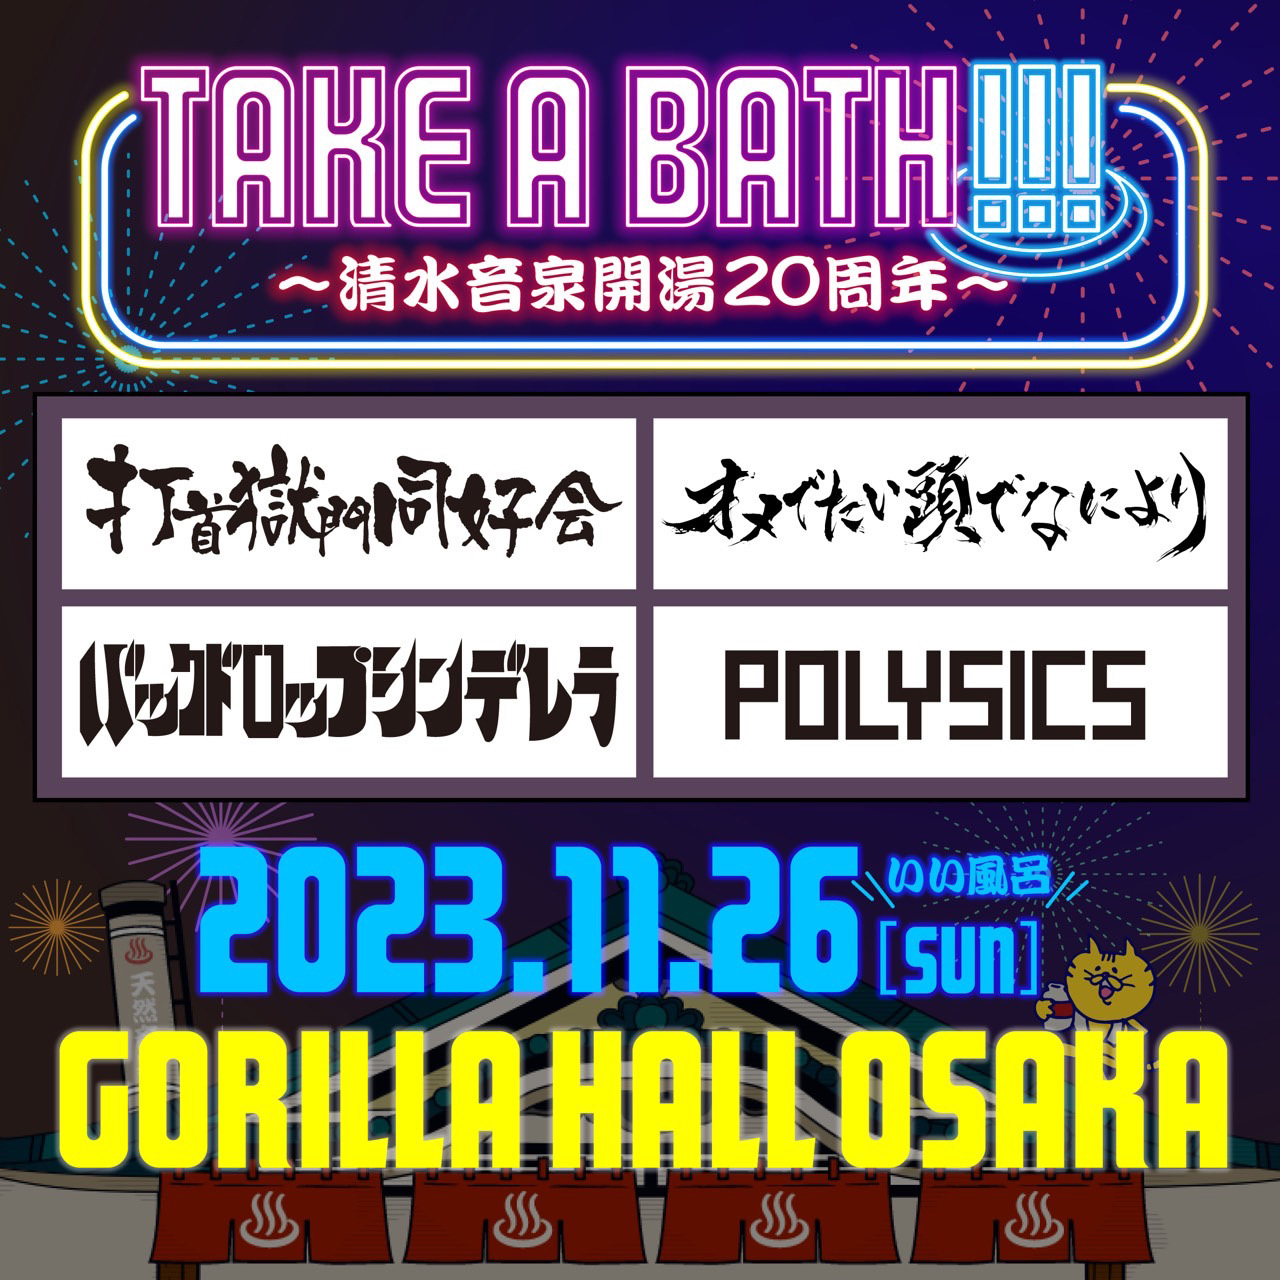 『TAKE A BATH !!! 〜清水音泉開湯20周年〜』